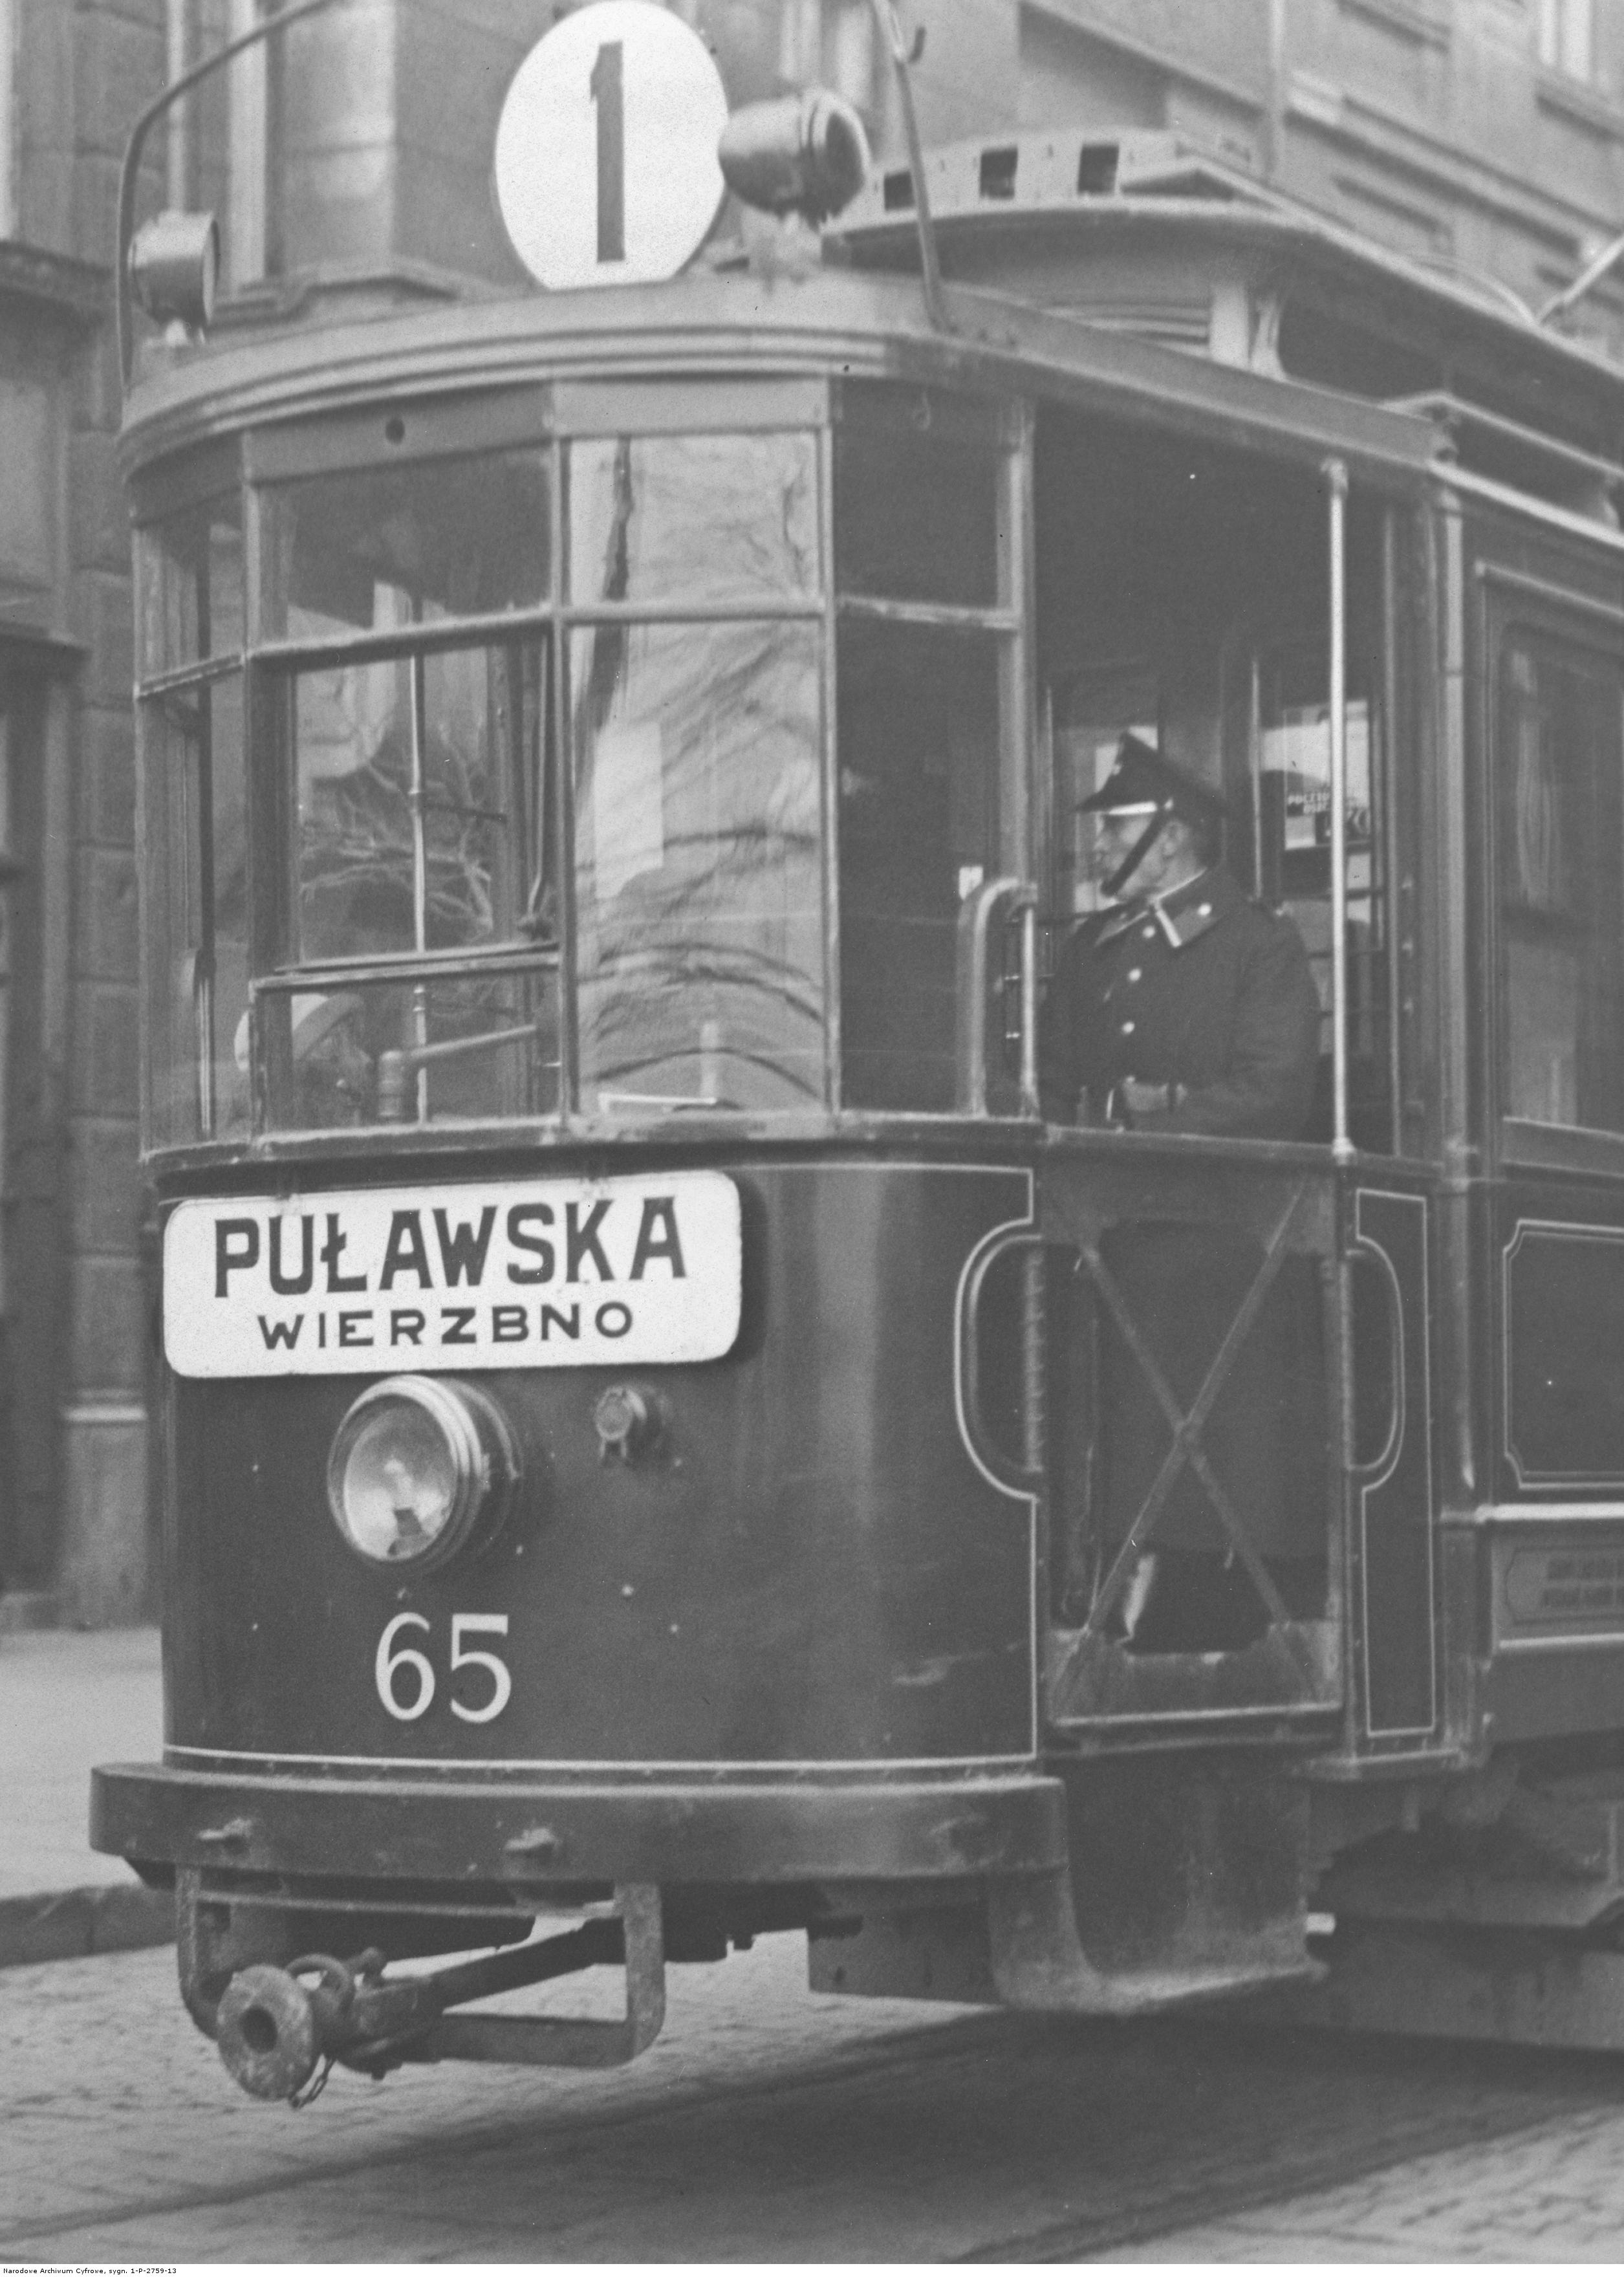 Strajk tramwajarzy warszawskich (1931)